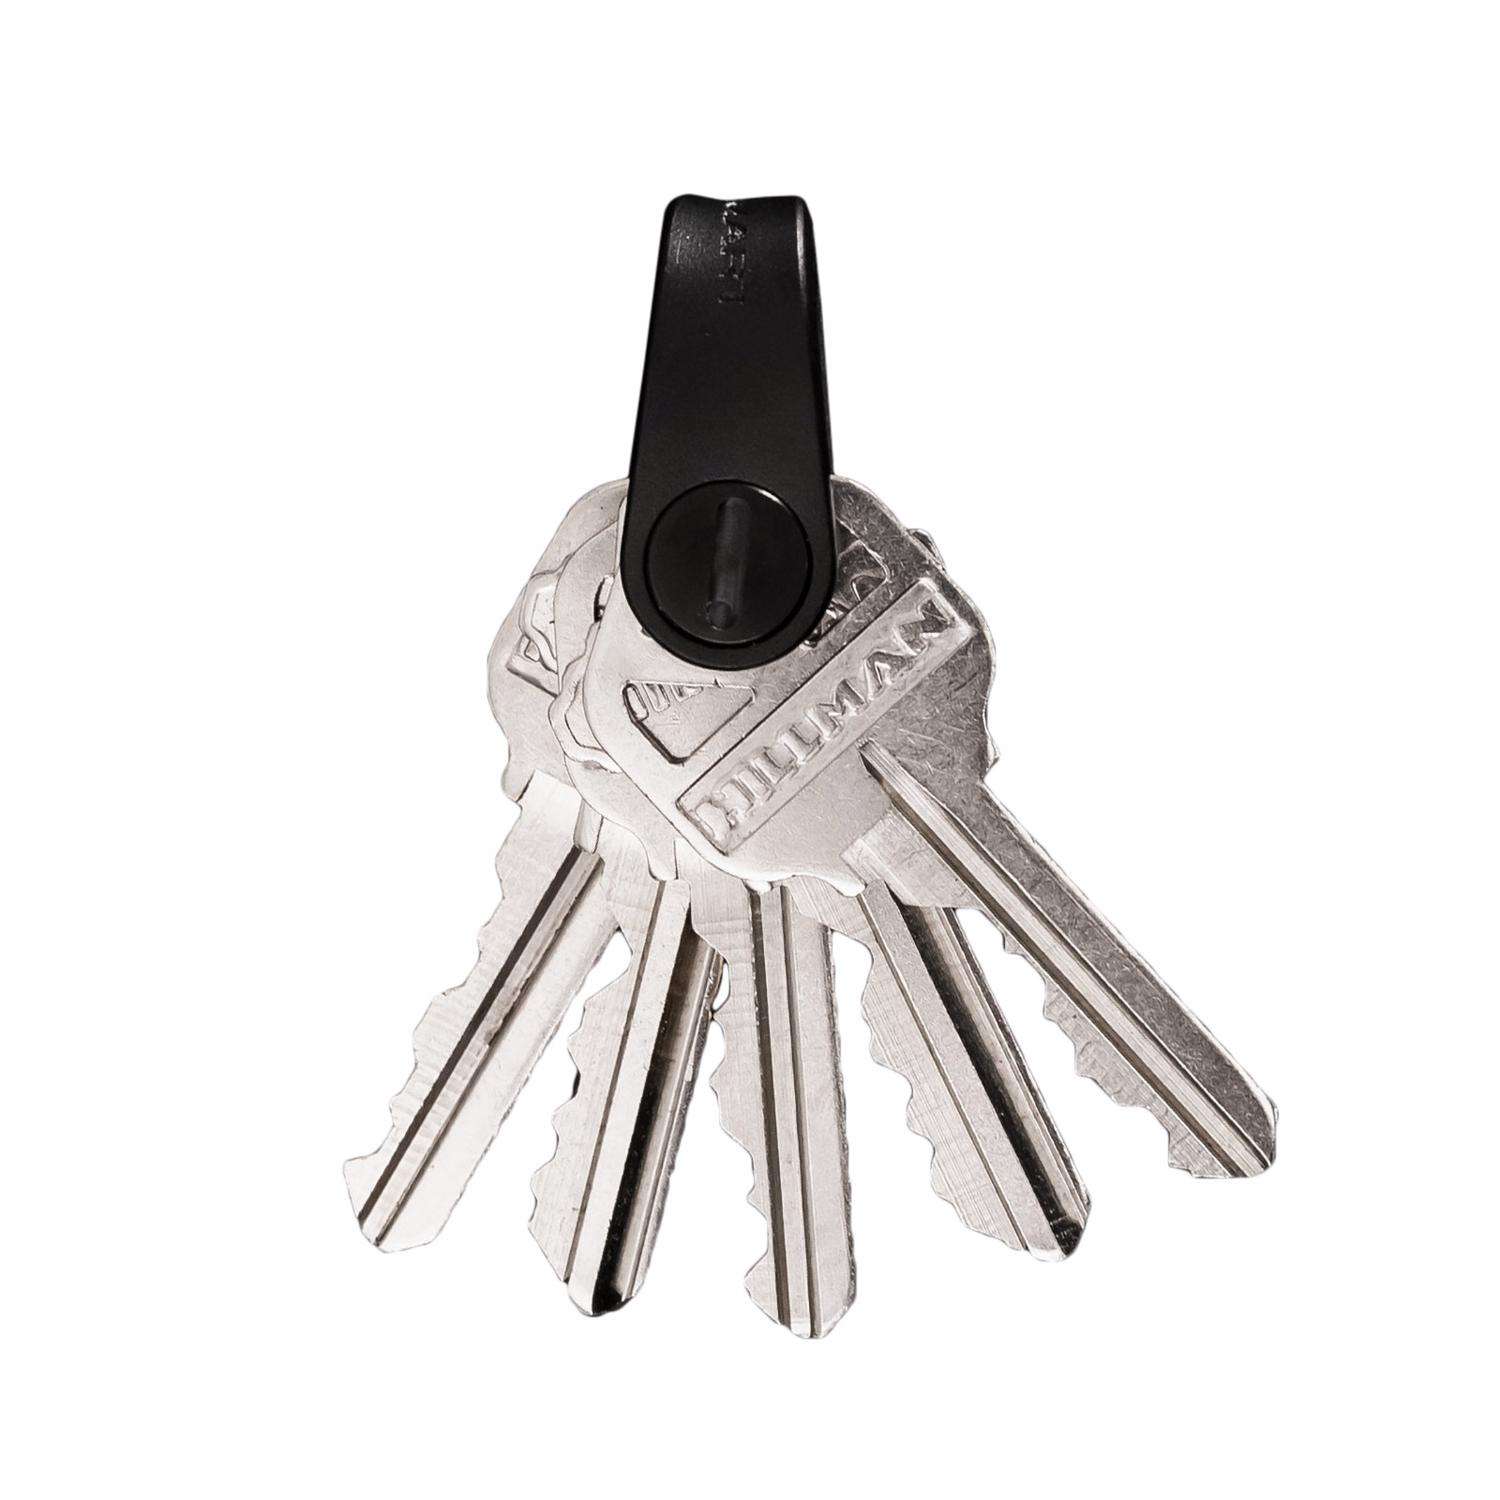 KeySmart Mini Minimalist Key Holder - Black